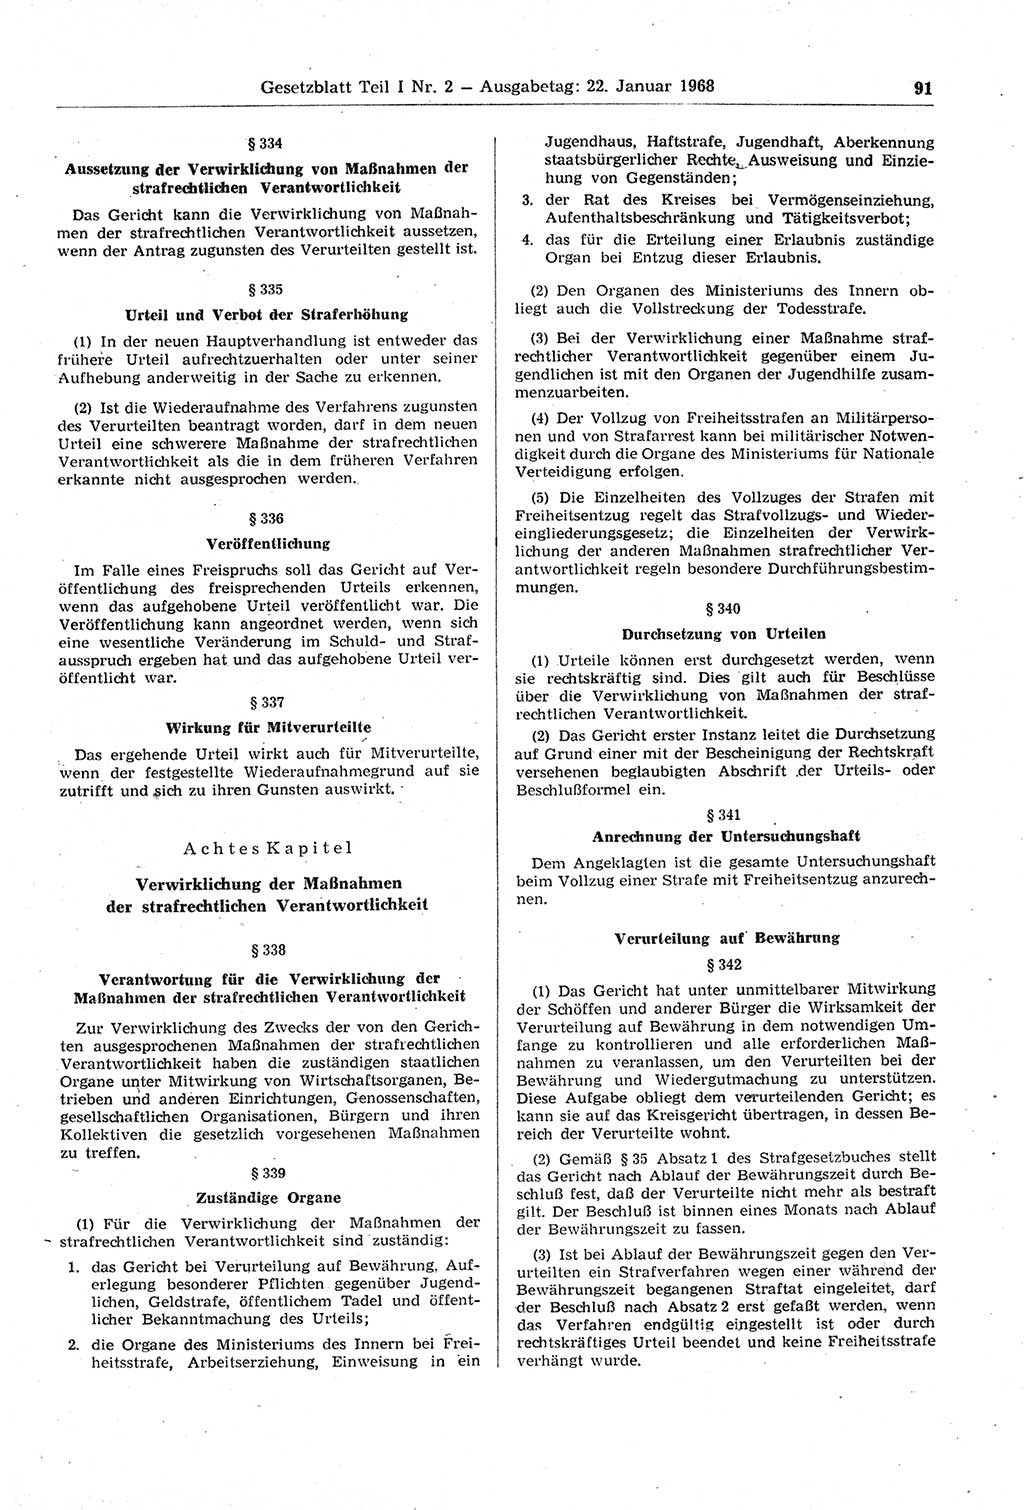 Gesetzblatt (GBl.) der Deutschen Demokratischen Republik (DDR) Teil Ⅰ 1968, Seite 91 (GBl. DDR Ⅰ 1968, S. 91)